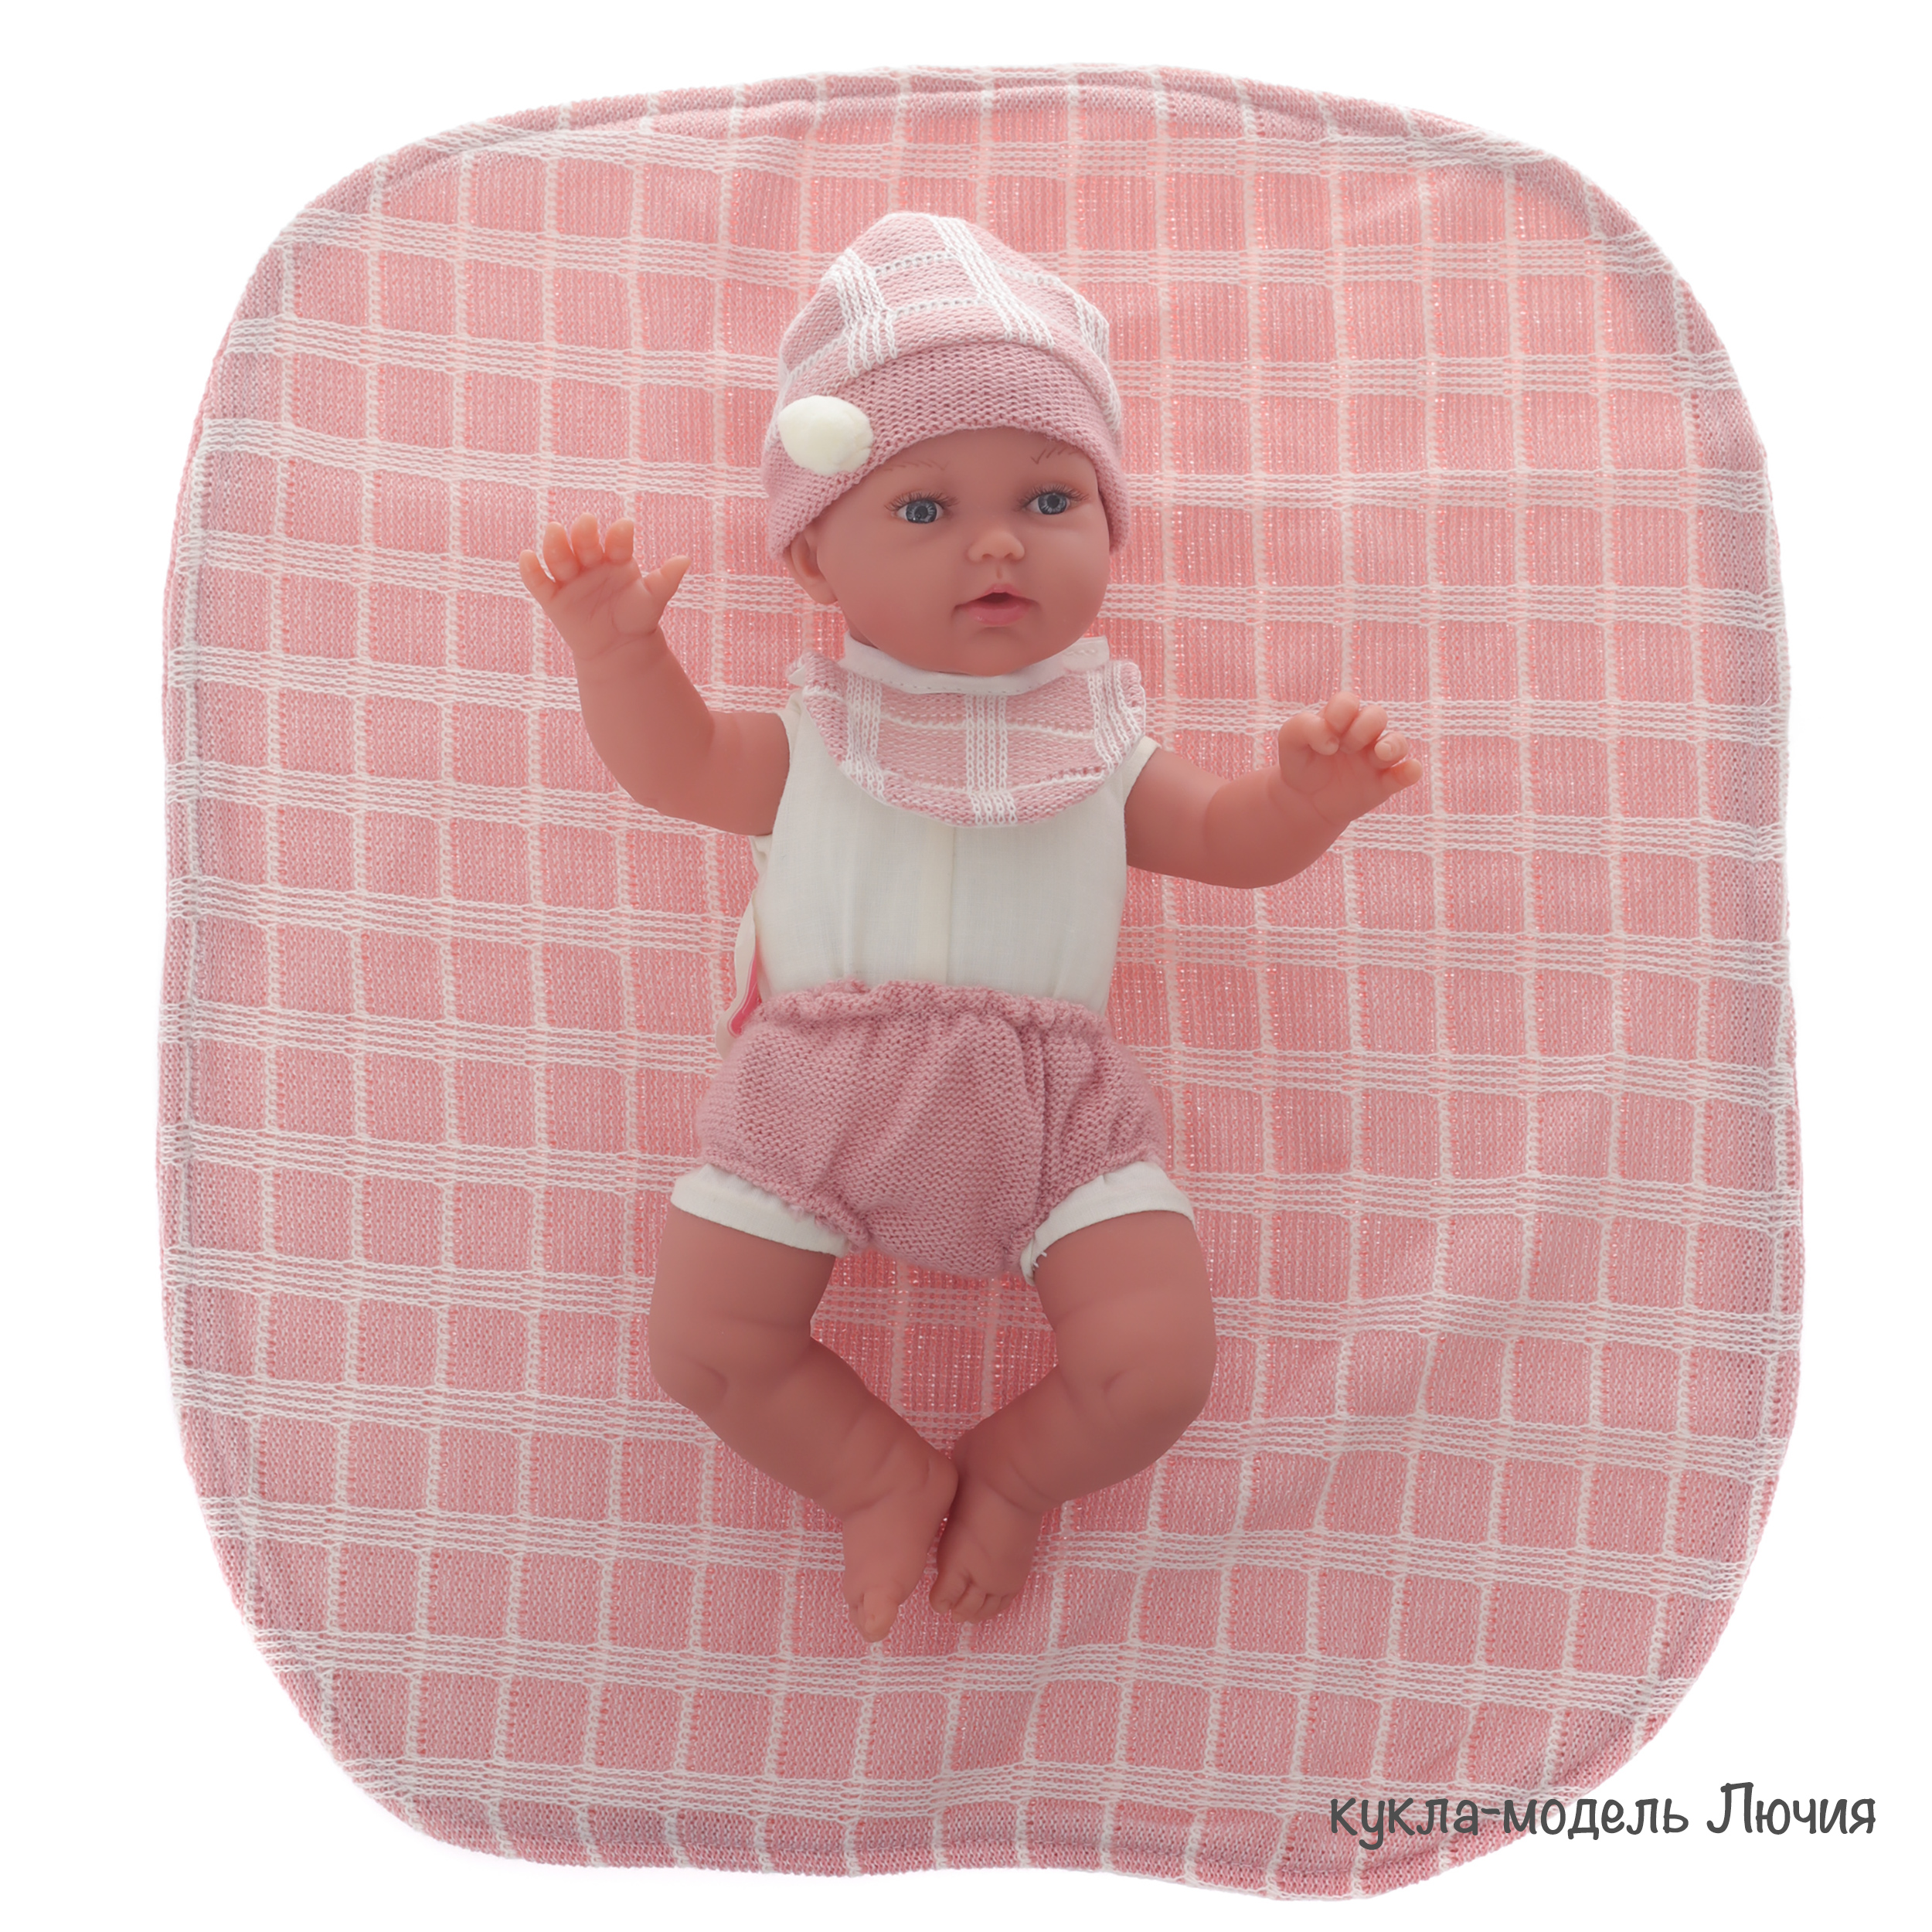 Комплект одежды для кукол 26 см розовое одеяло шапка слюнявчик трусики  